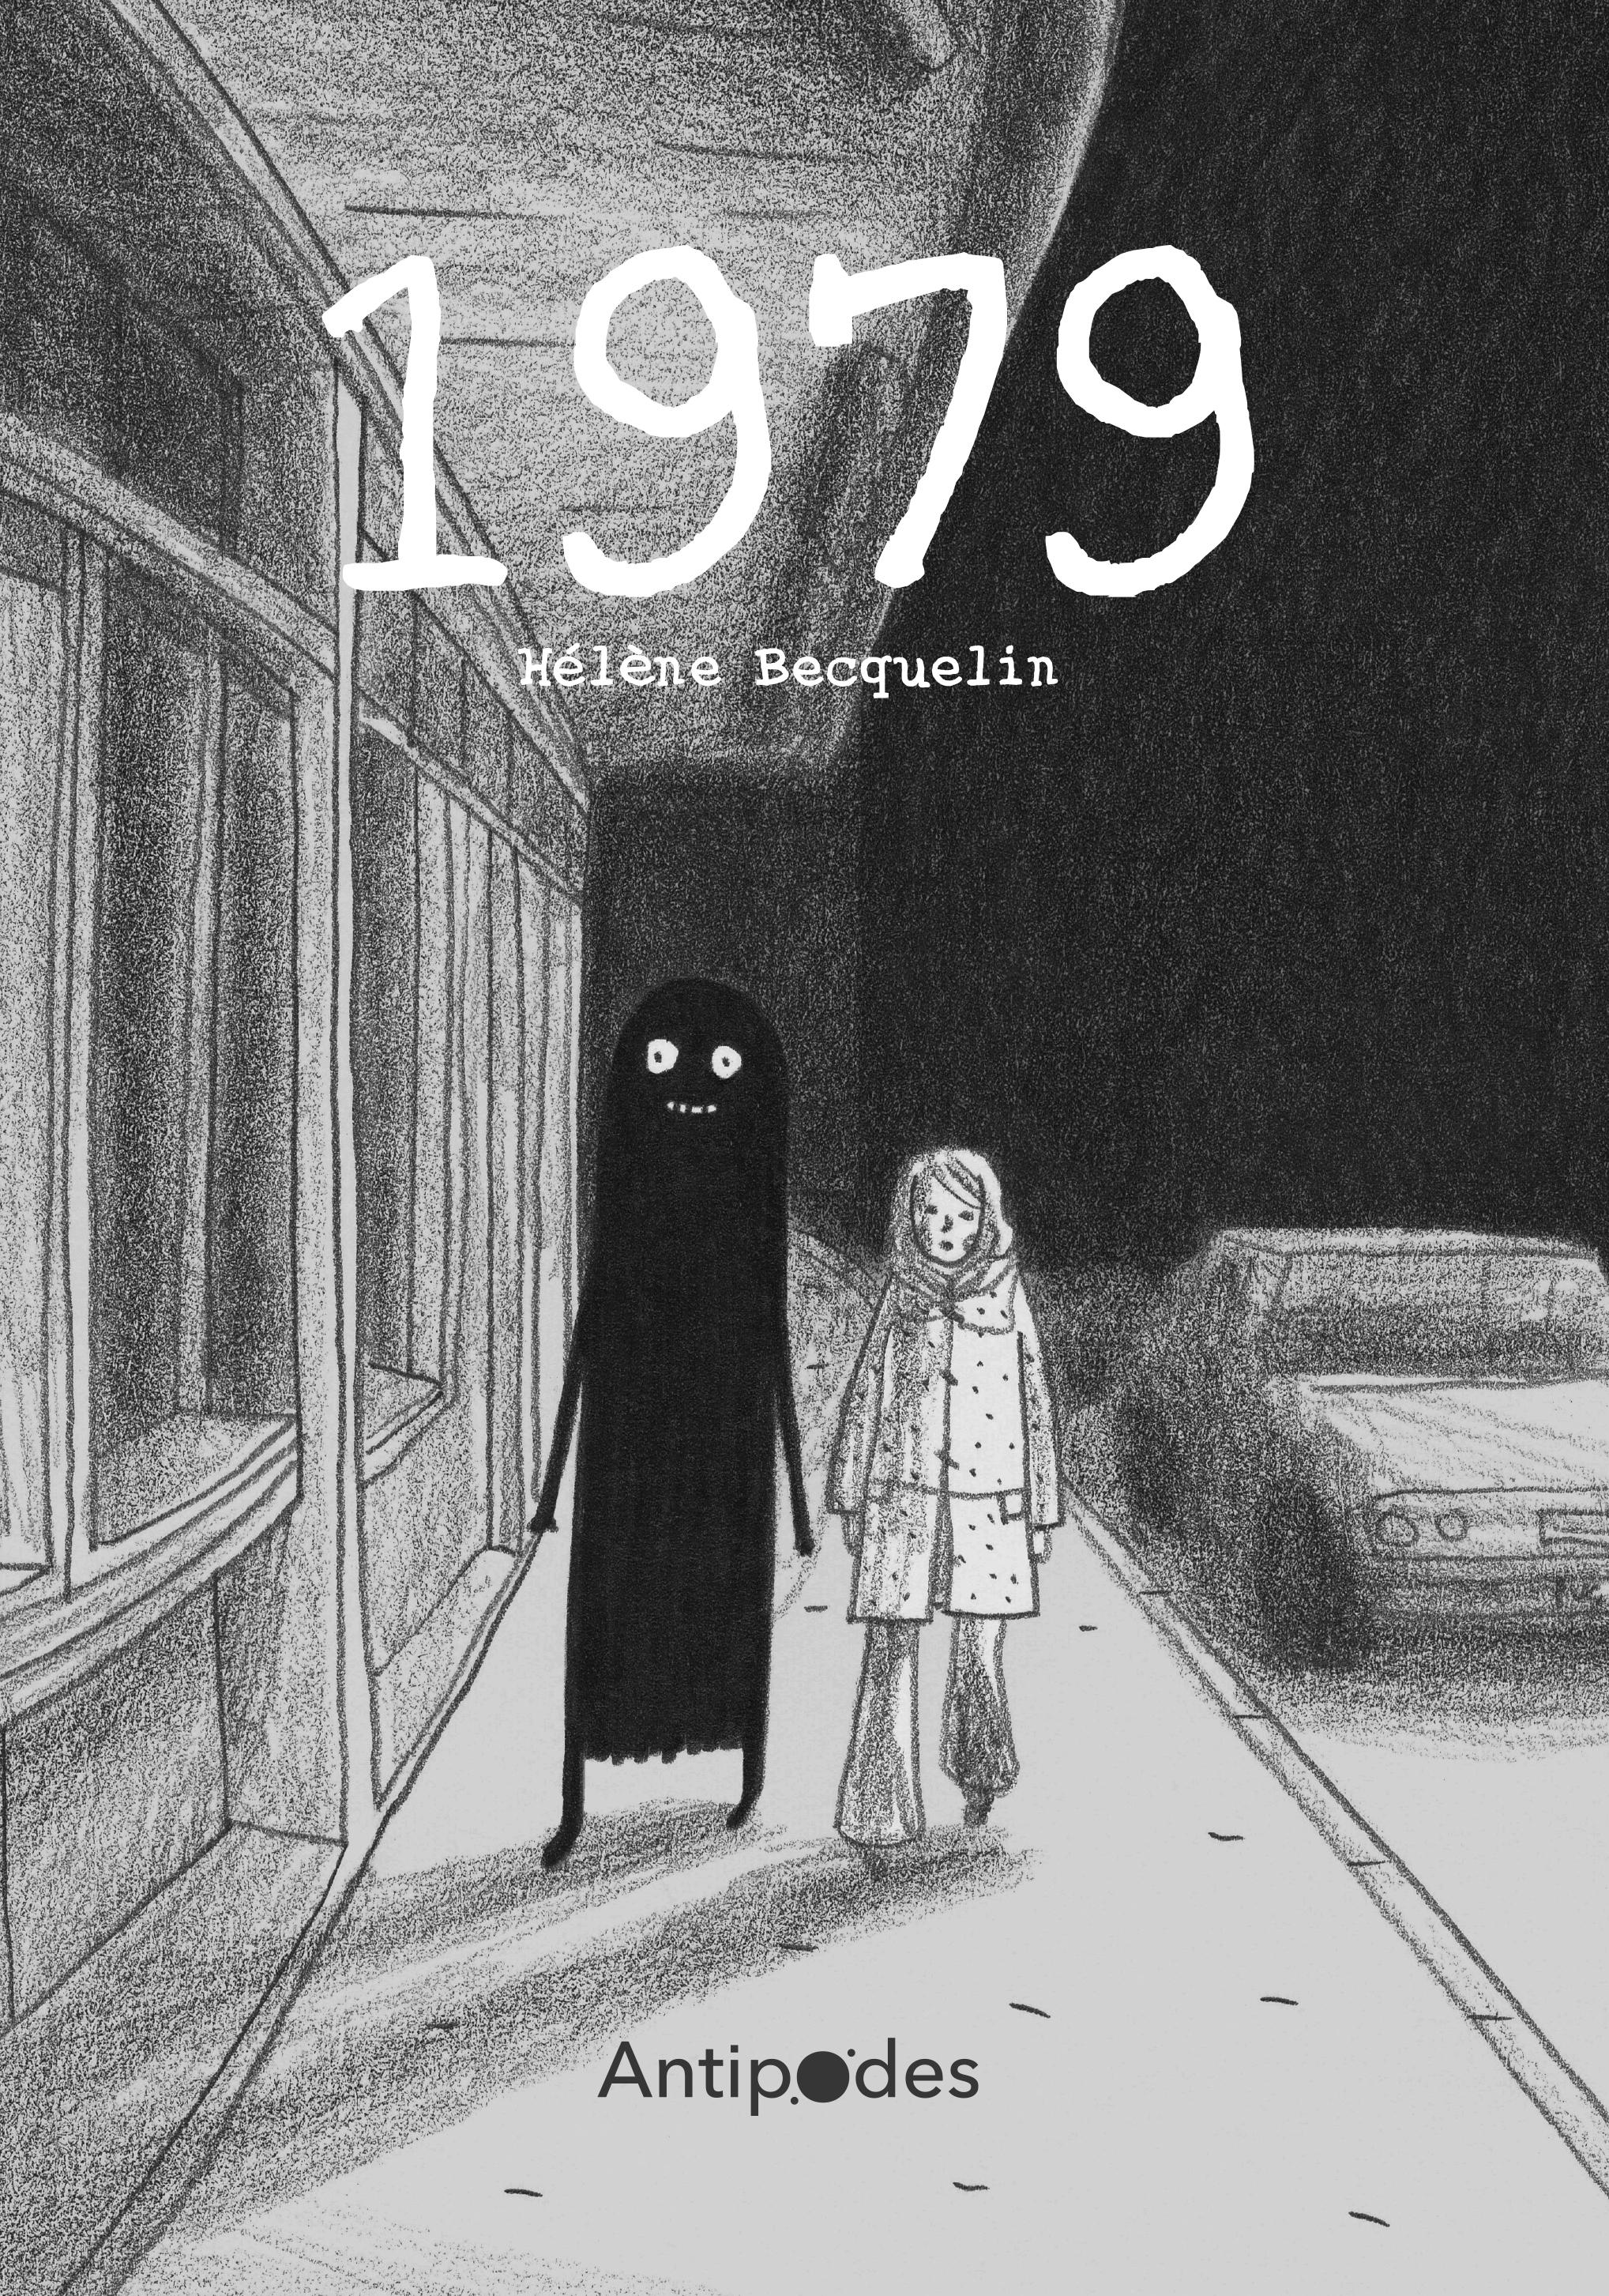 La couverture de la BD "1979" d'Hélène Becquelin. [Antipodes]